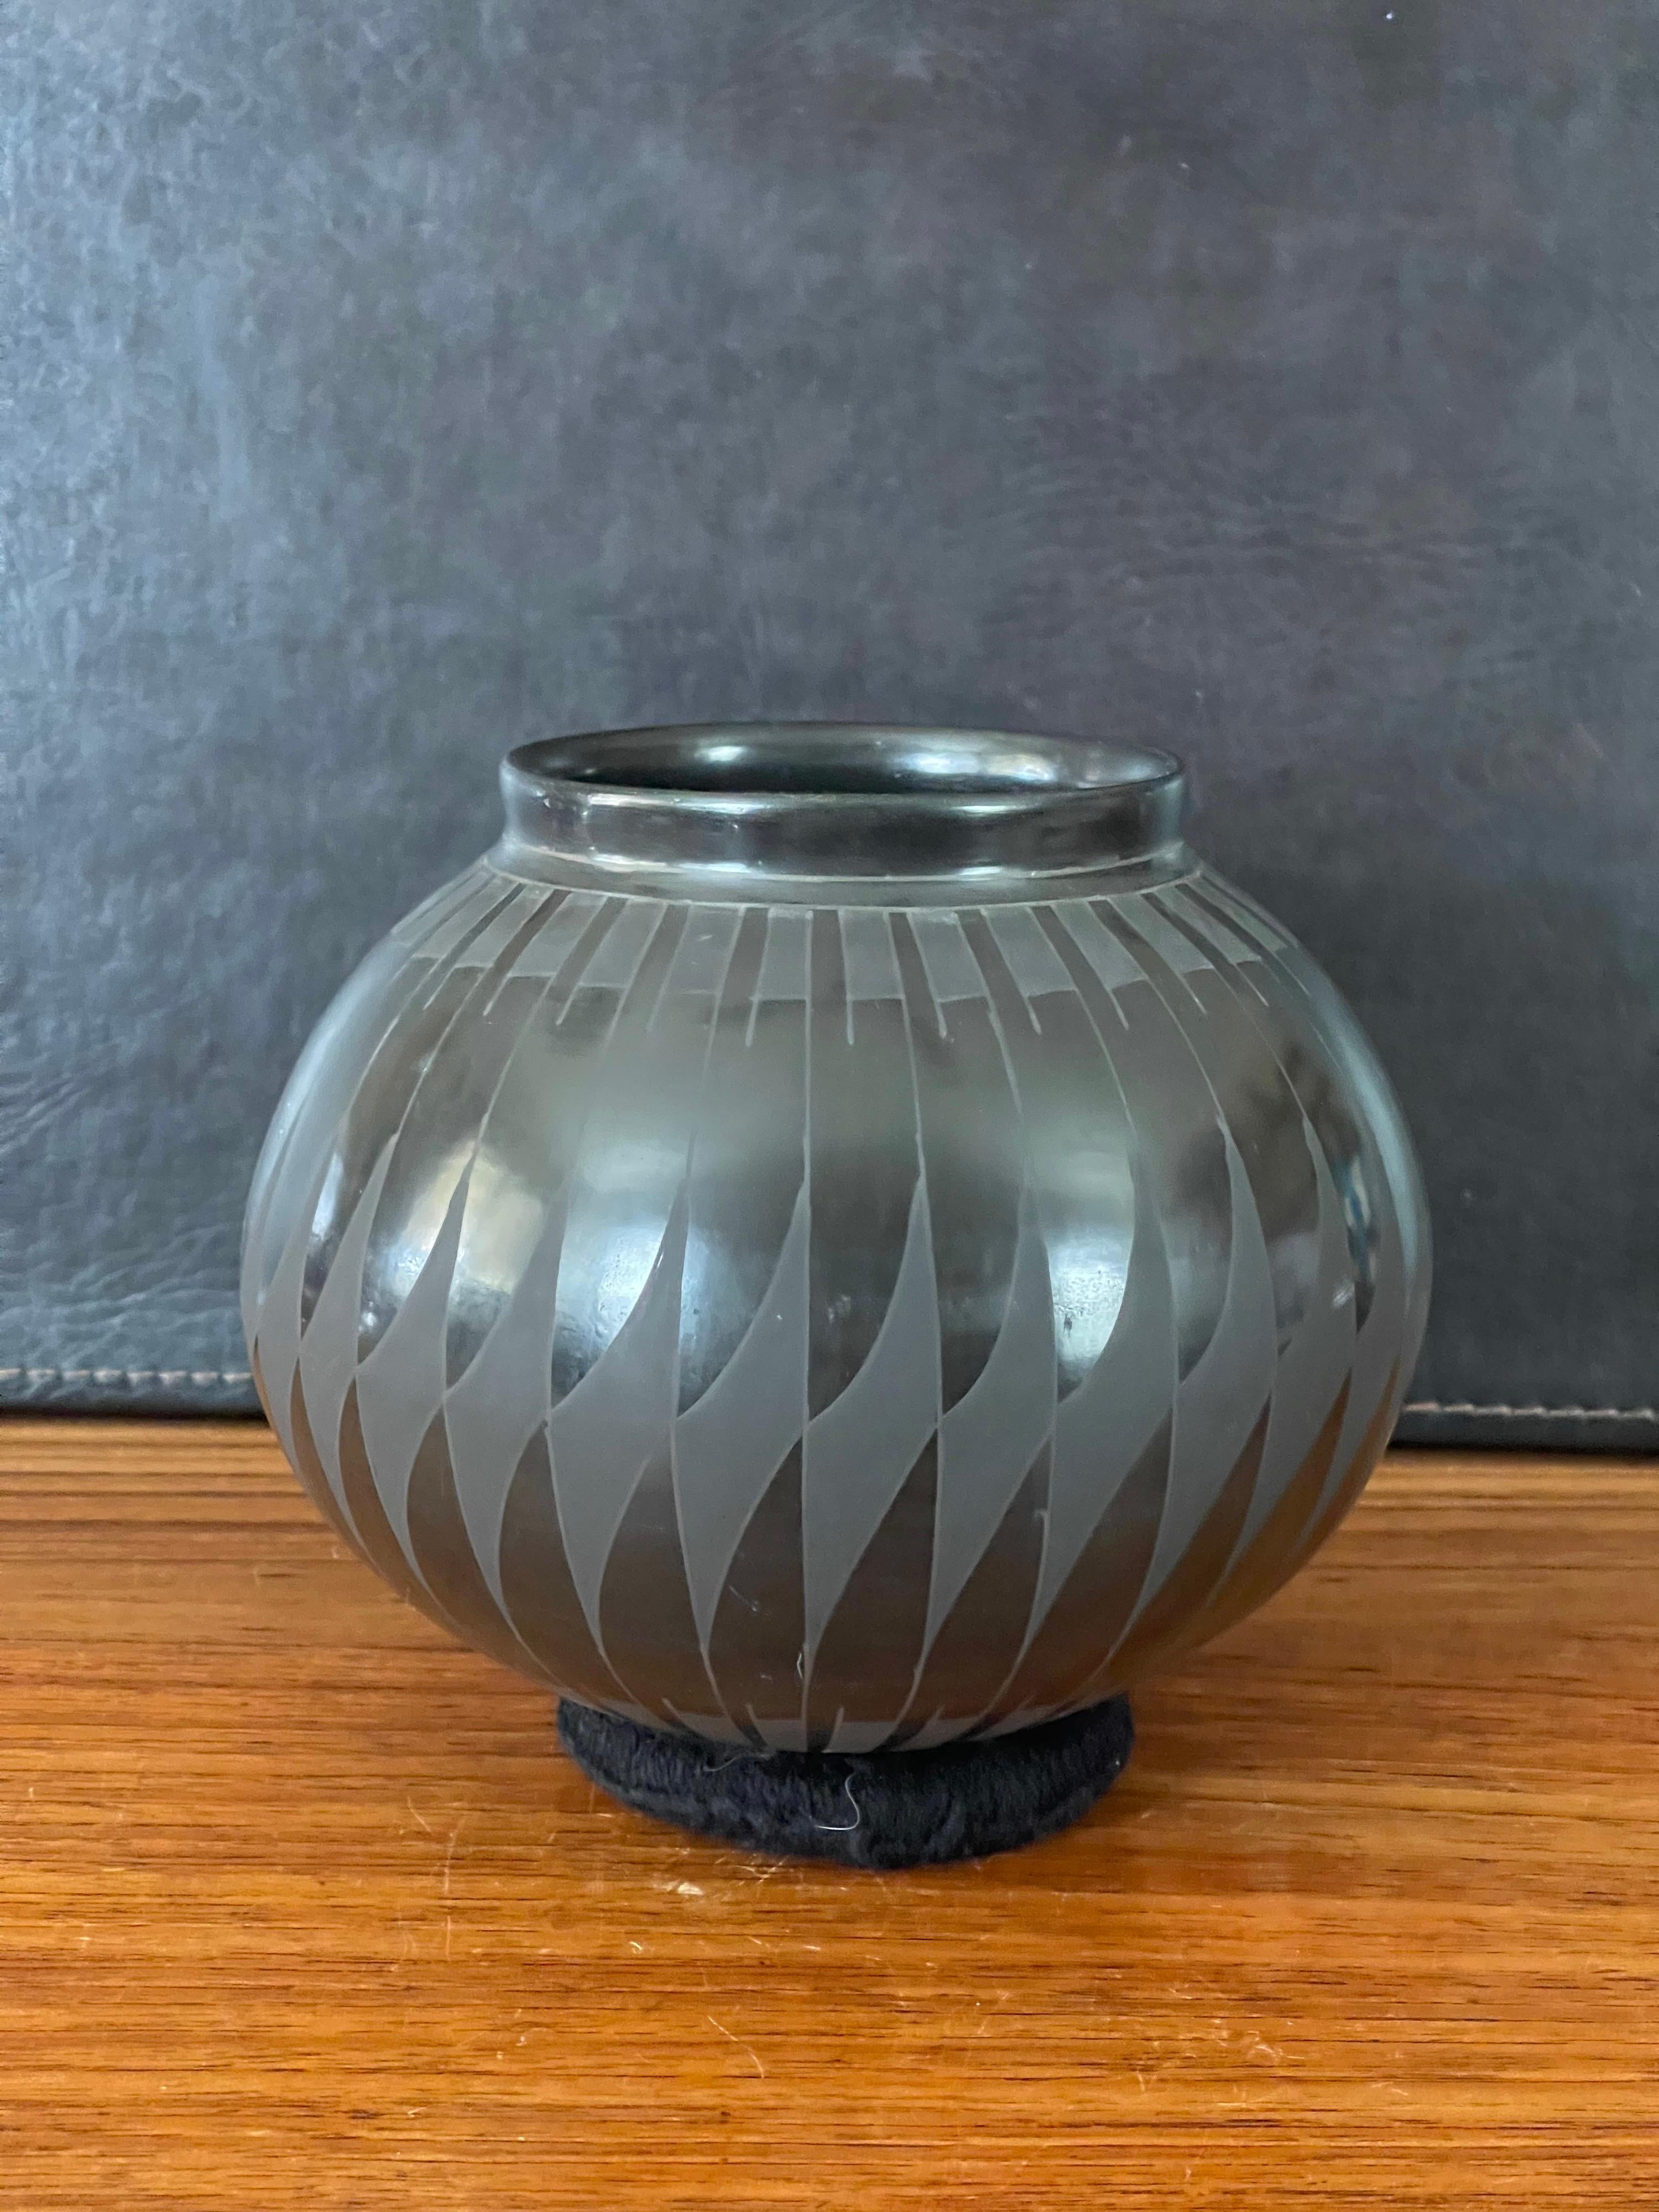 Magnifique vase géométrique en blackware tourné à la main par David Ortiz, vers les années 1990. Cette pièce exquise en argile naturellement noire présente un motif géométrique unique. Ce vase est en très bon état et mesure 7